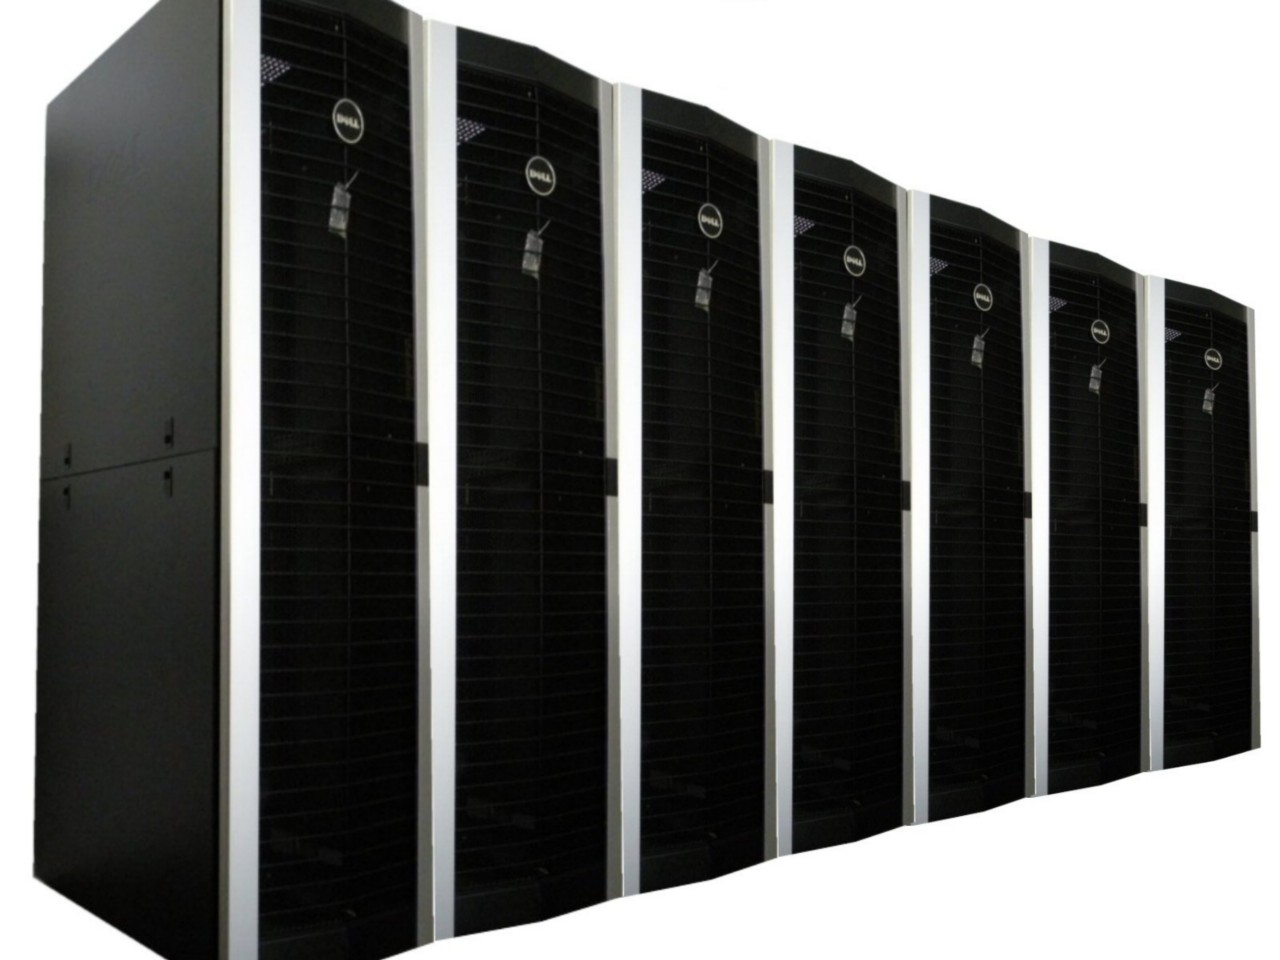 40x Dell 4220 Server Rack Poweredge Cabinet 42u Computer Enclosure